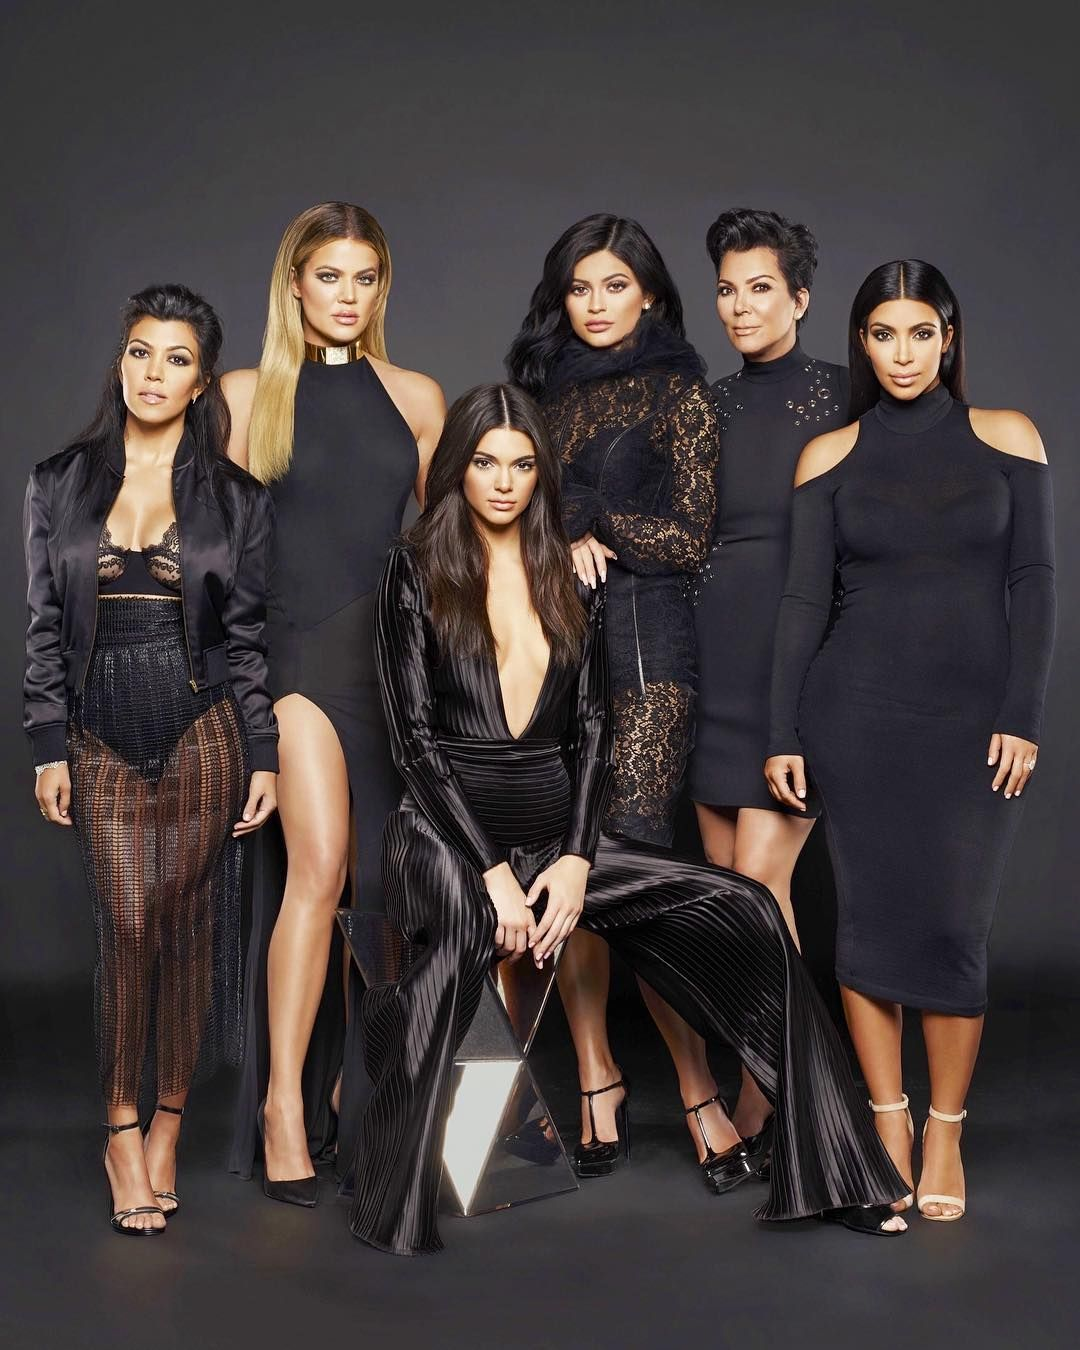 Las 6 mujeres de la familia Kardashian-Jenner posan vestidas de negro mirando a cámara de frente.